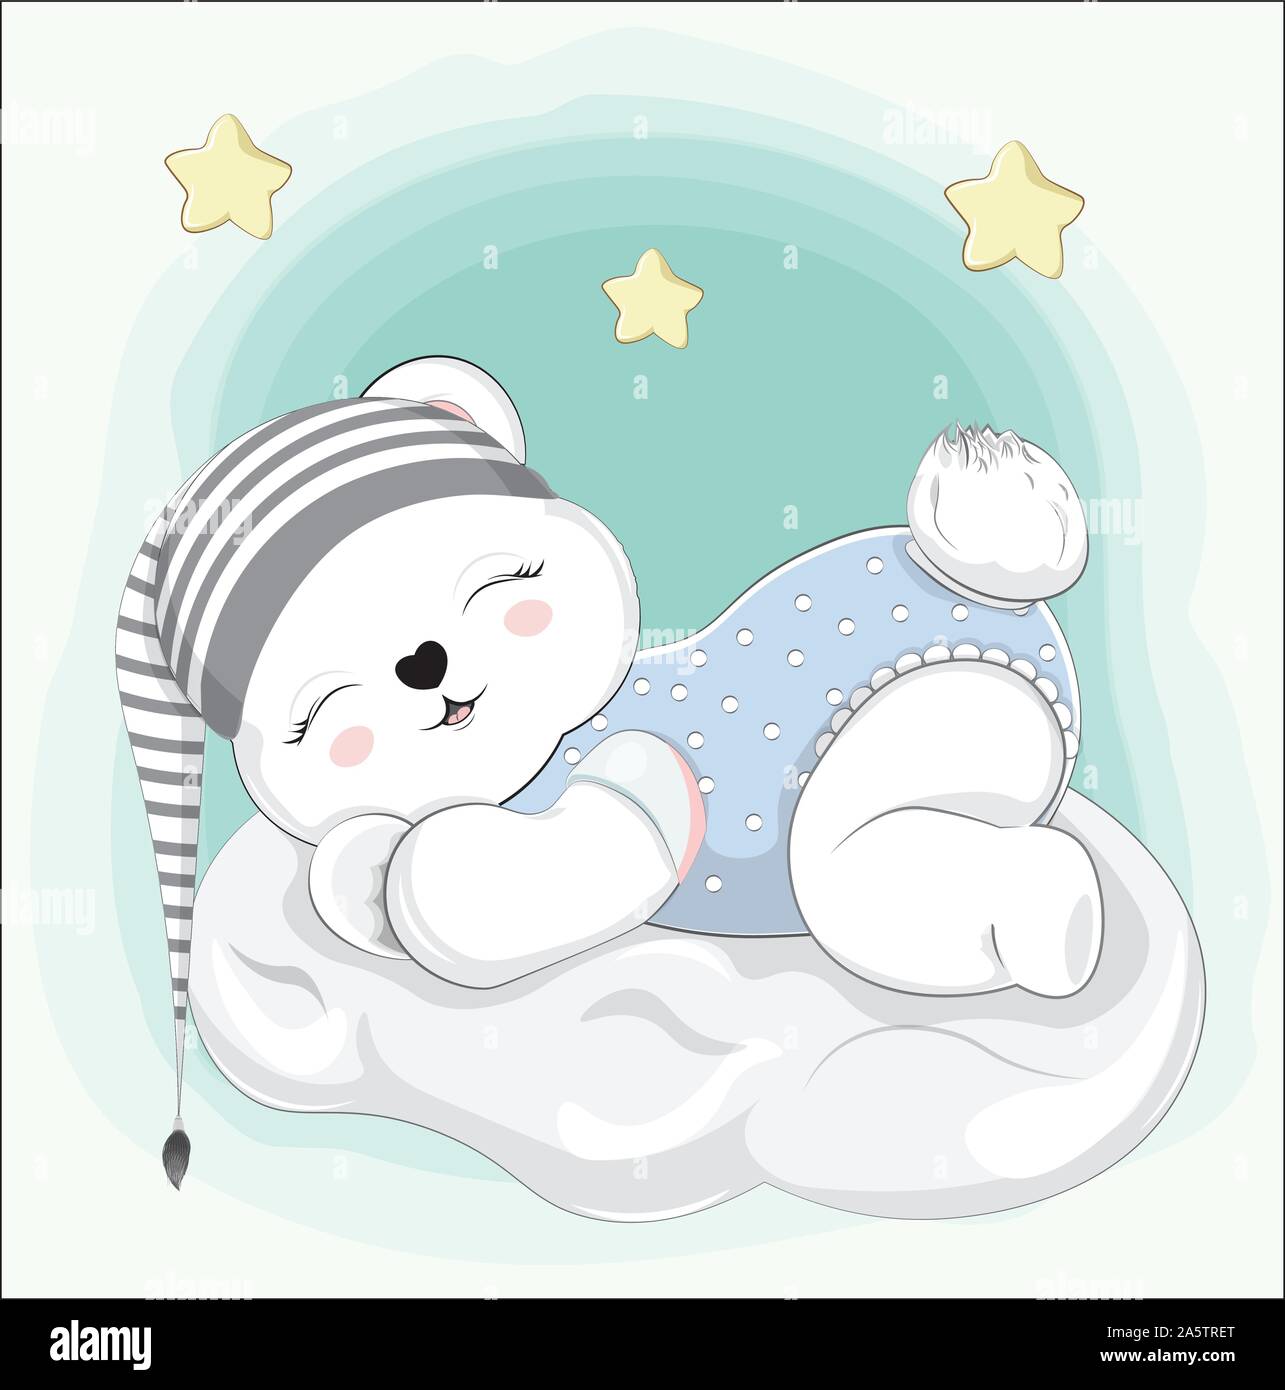 Oso de peluche bebé niño dormido sobre la nube en rayas cap. Imagen de  estilo de dibujo a mano alzada para baby shower. Tarjeta de felicitación, de  invitación a fiesta, ropa de